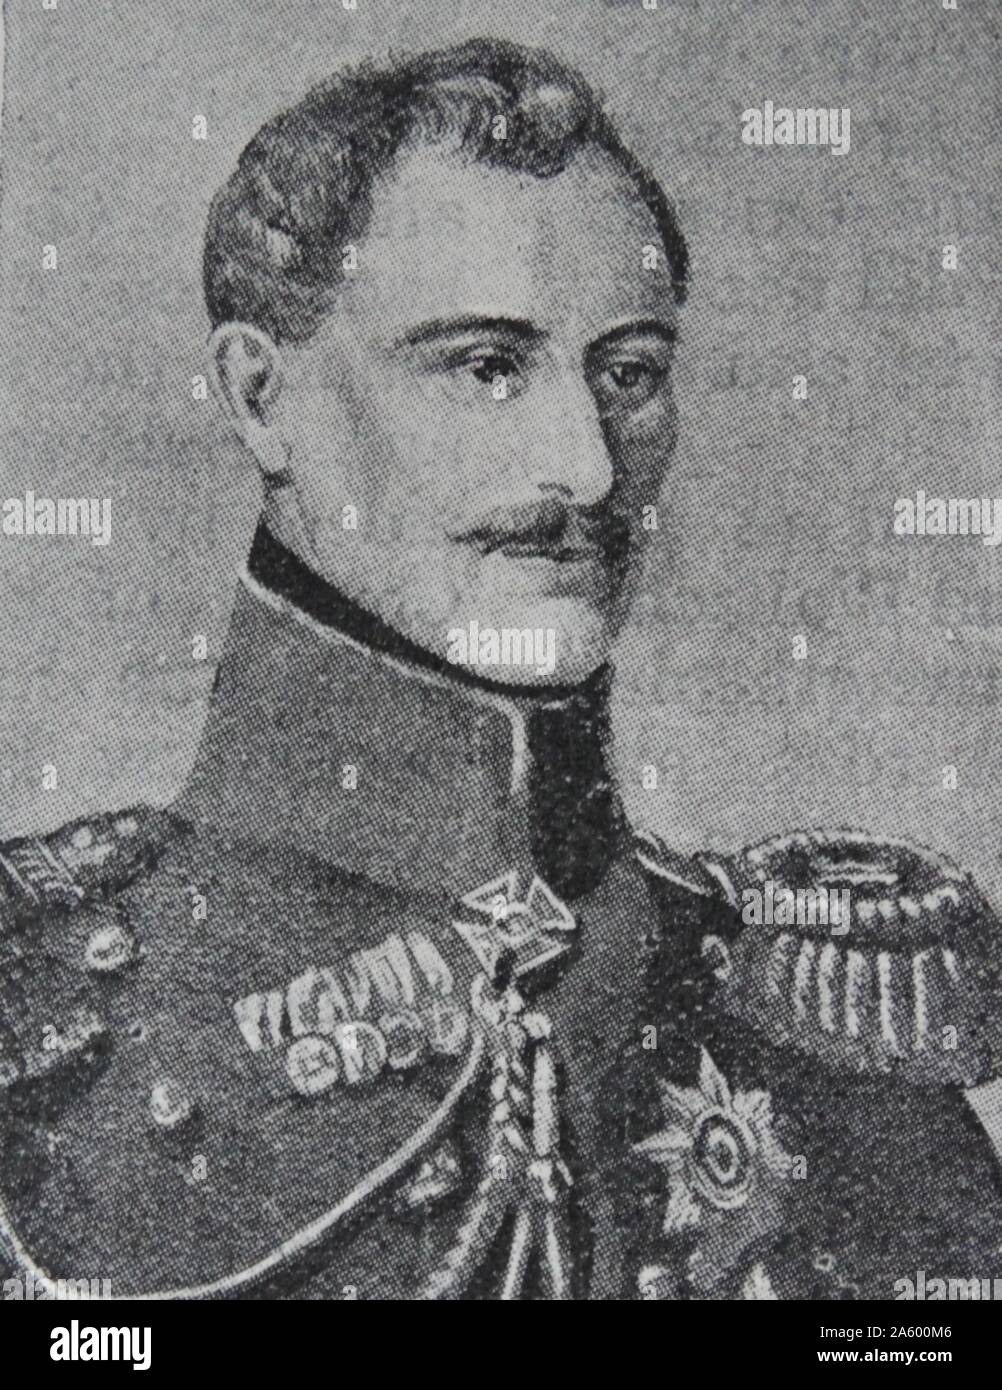 Ritratto di Alexander Sergeyevich Menšikov (1787-1869) un nobile finno-russa, comandante militare e statista. Datata del XIX secolo Foto Stock